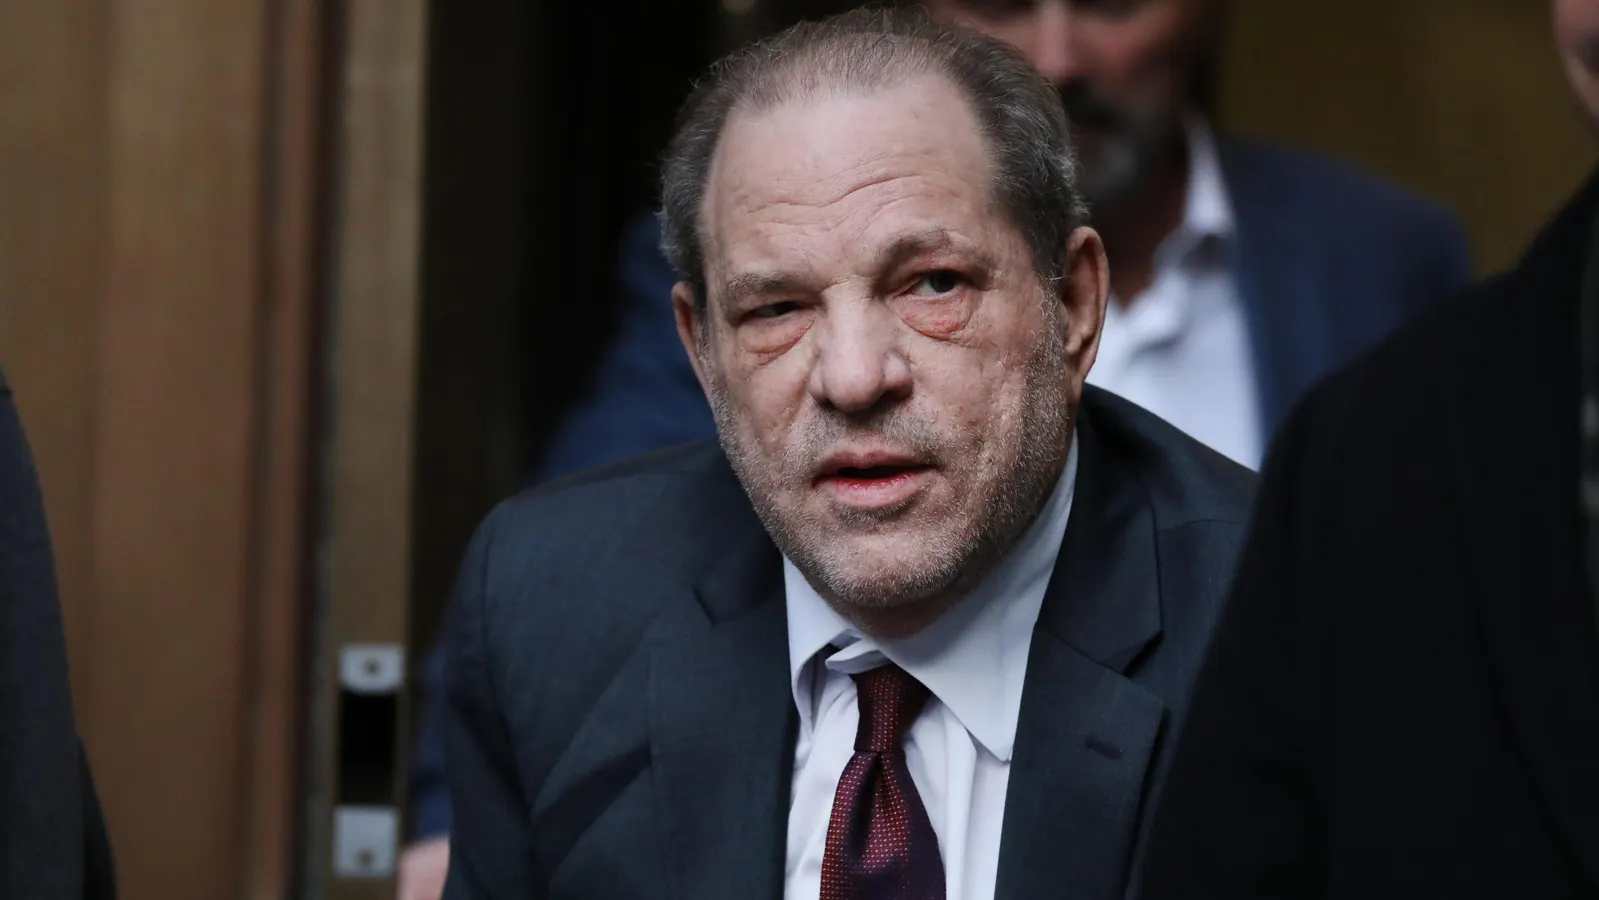 O mais alto tribunal de Nova York anulou nesta quinta-feira (25) a denúncia de Harvey Weinstein por estupro em 2020, concluindo que o juiz do julgamento prejudicou o ex-magnata do cinema com decisões tomadas durante o processo, incluindo uma de permitir que mulheres testemunhassem sobre alegações que não faziam parte do caso. As informações são da agência de notícias Associated Press.